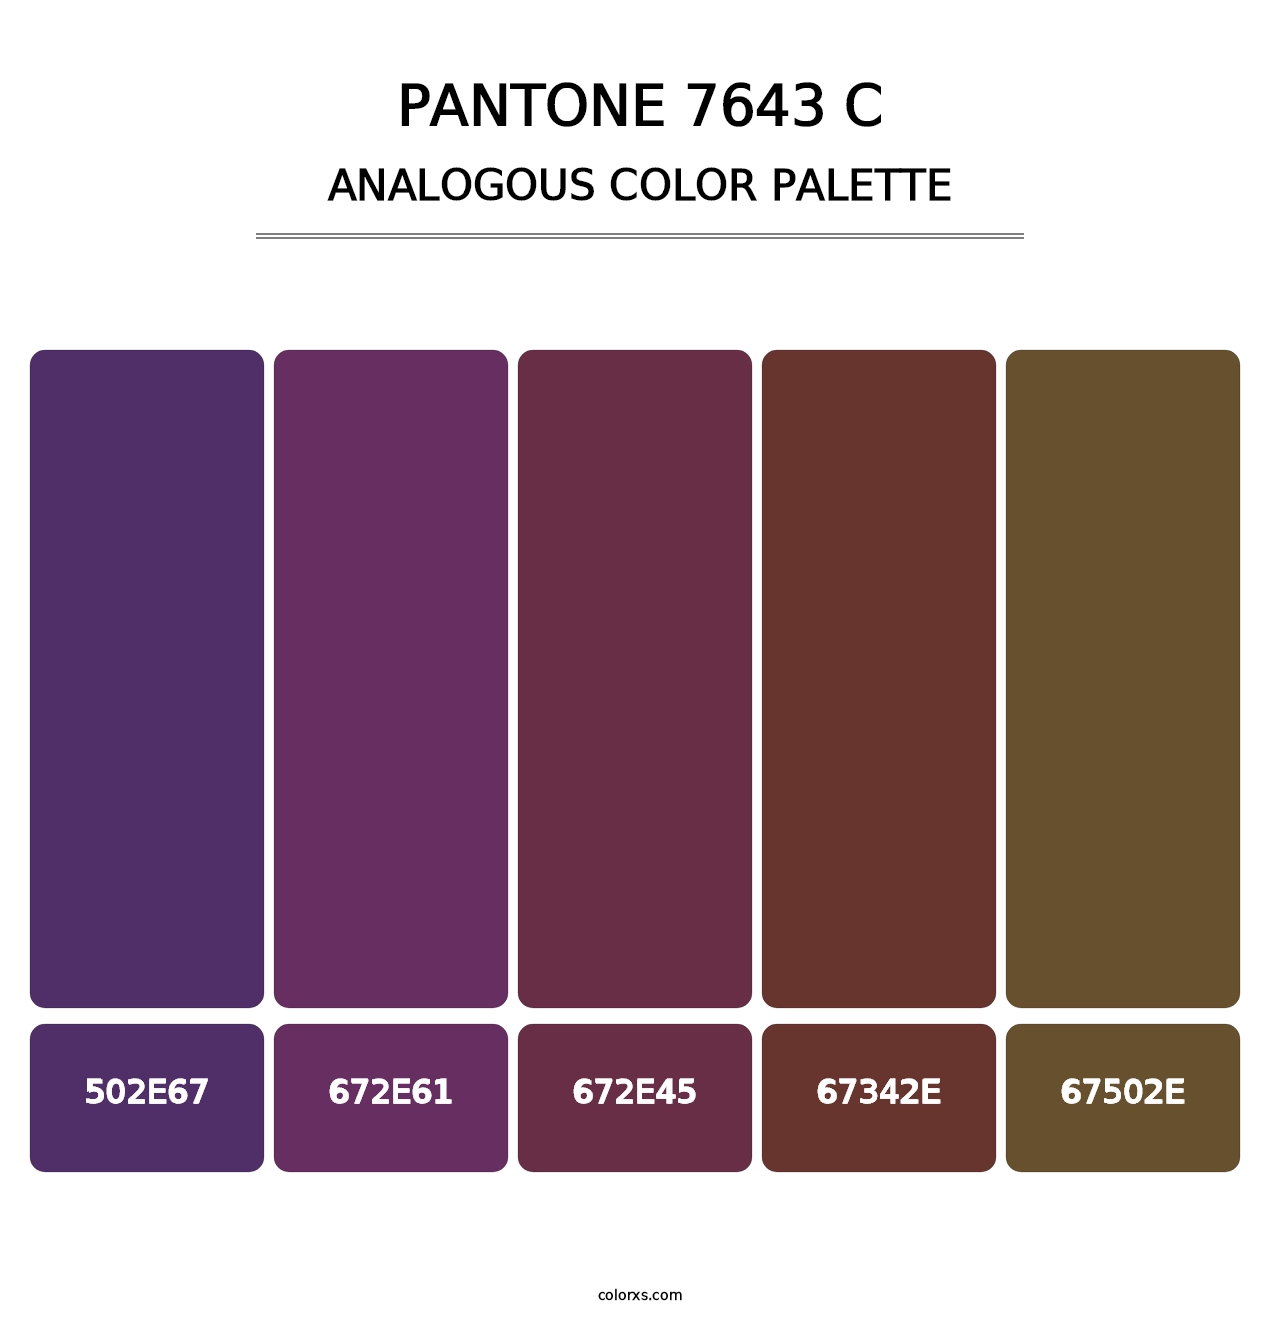 PANTONE 7643 C - Analogous Color Palette